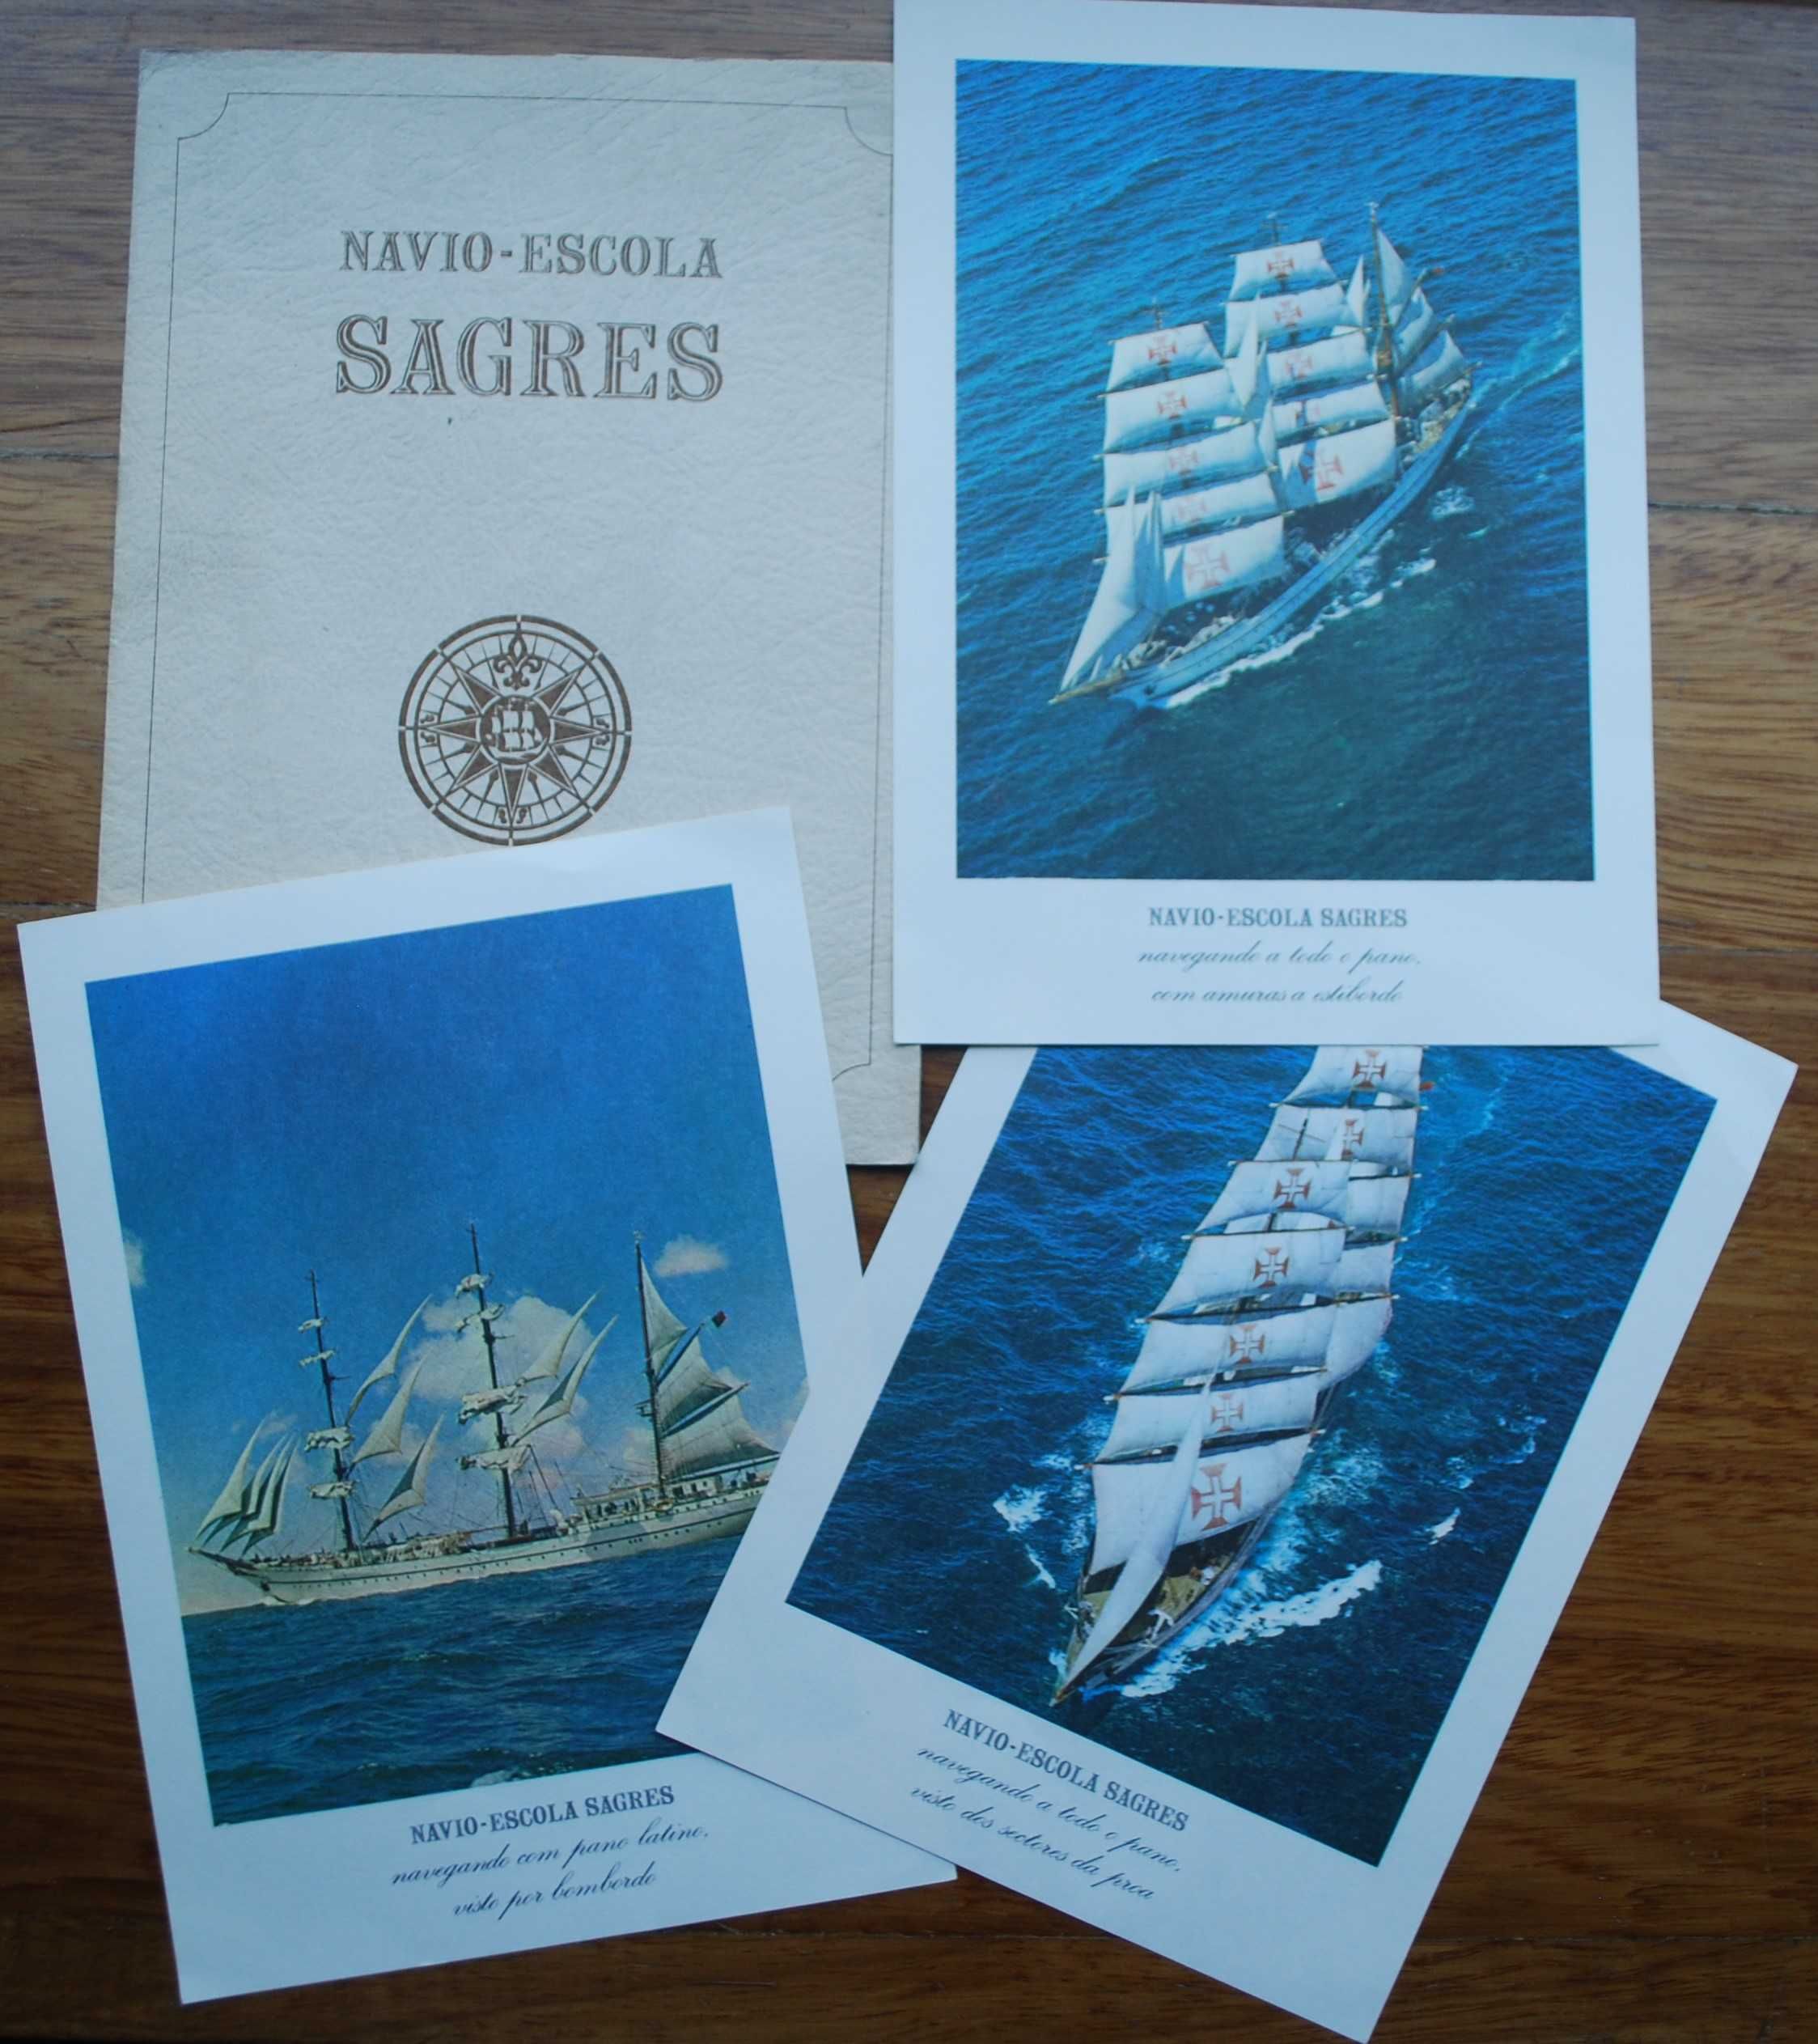 Navio Escola Sagres - Estampas Imagens (25 x 18 cm)